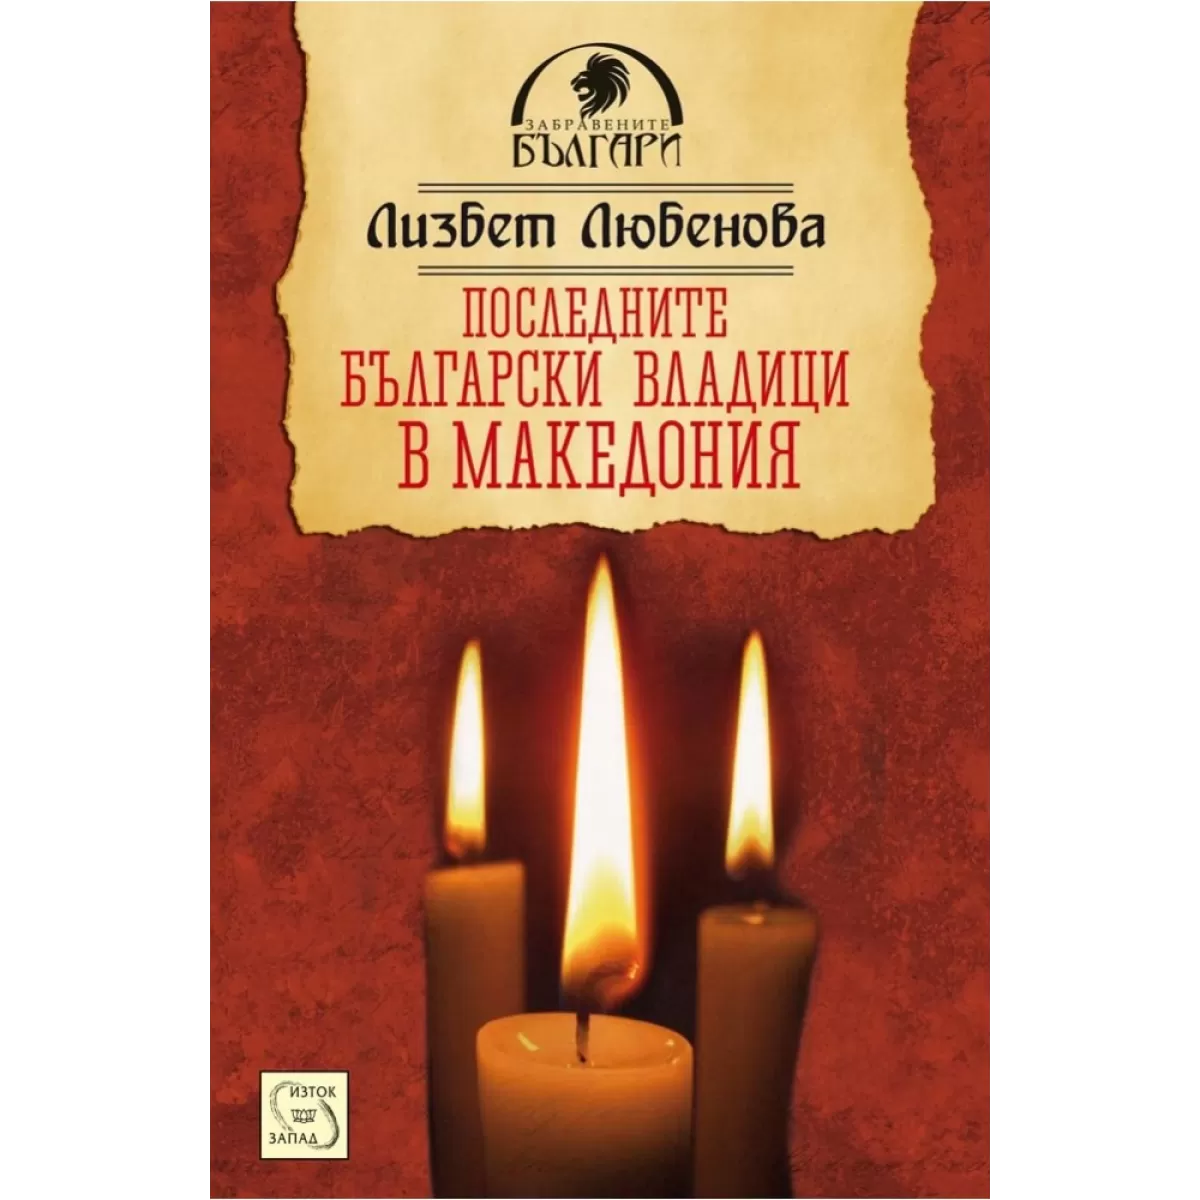 Последните български владици в Македония